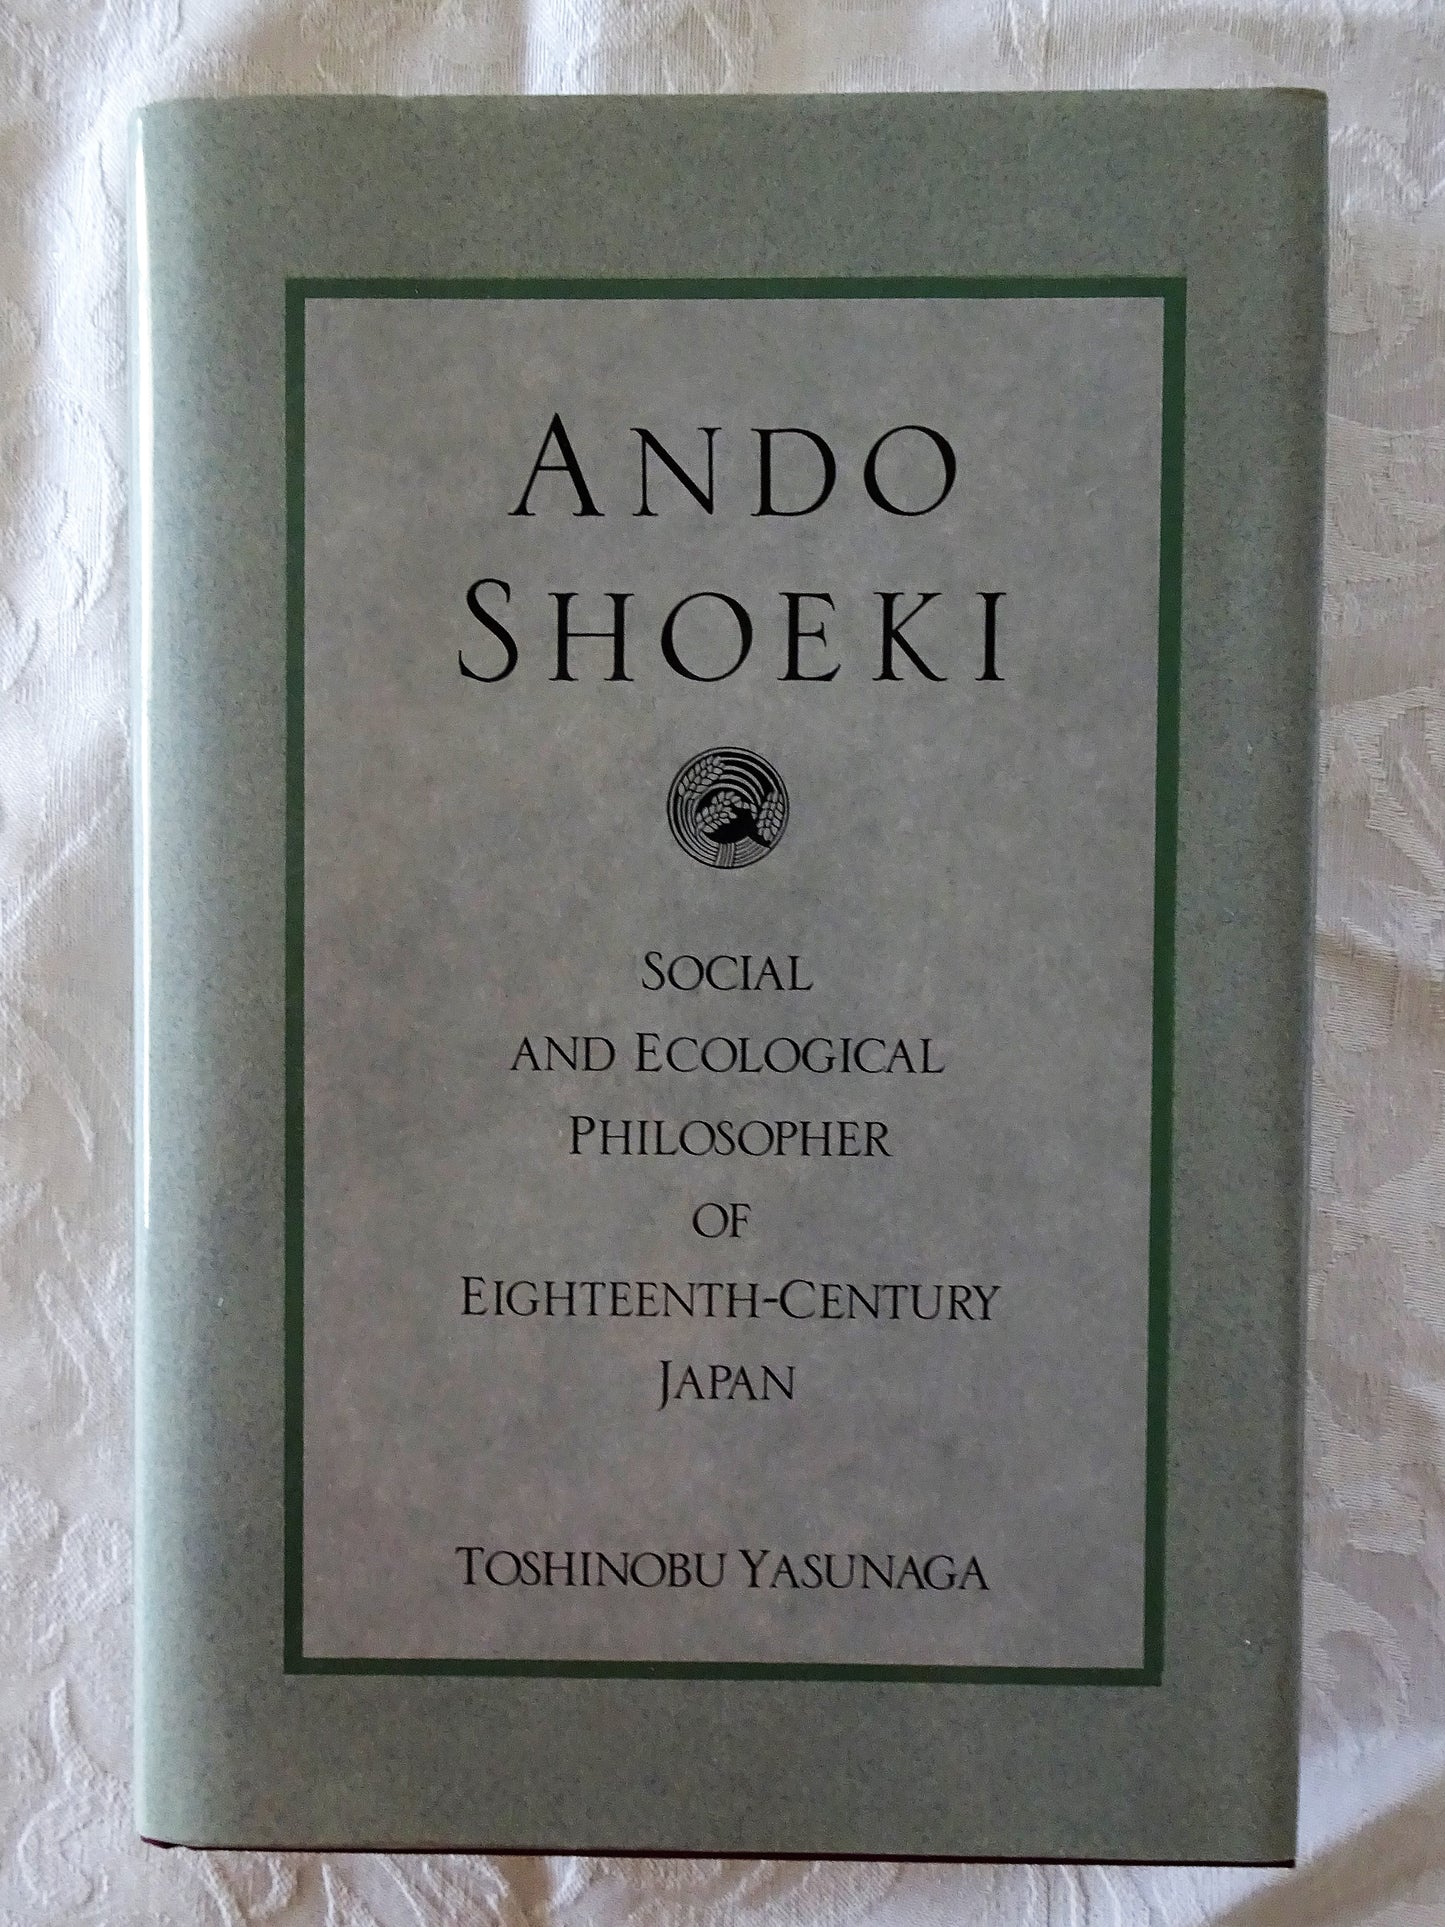 Ando Shoeki by Toshinobu Yasunaga